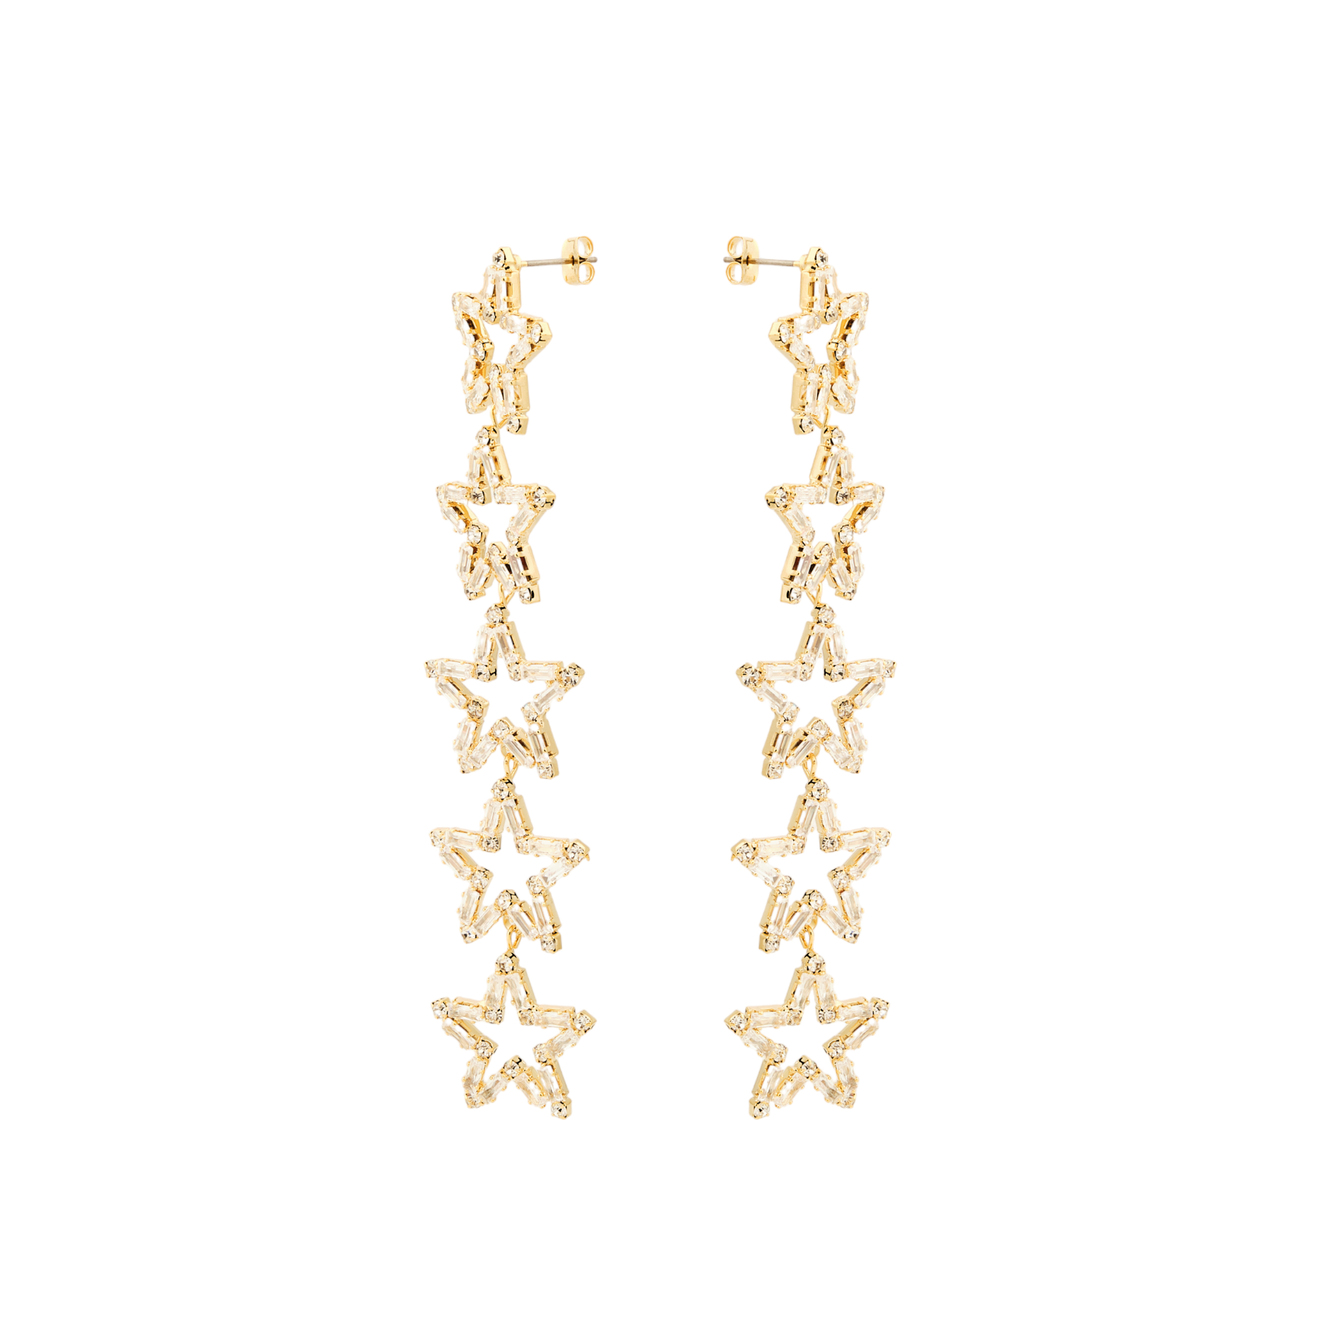 Herald Percy Золотистые длинные серьги с звездами с кристаллами herald percy золотистые серьги стрелки с кристаллами